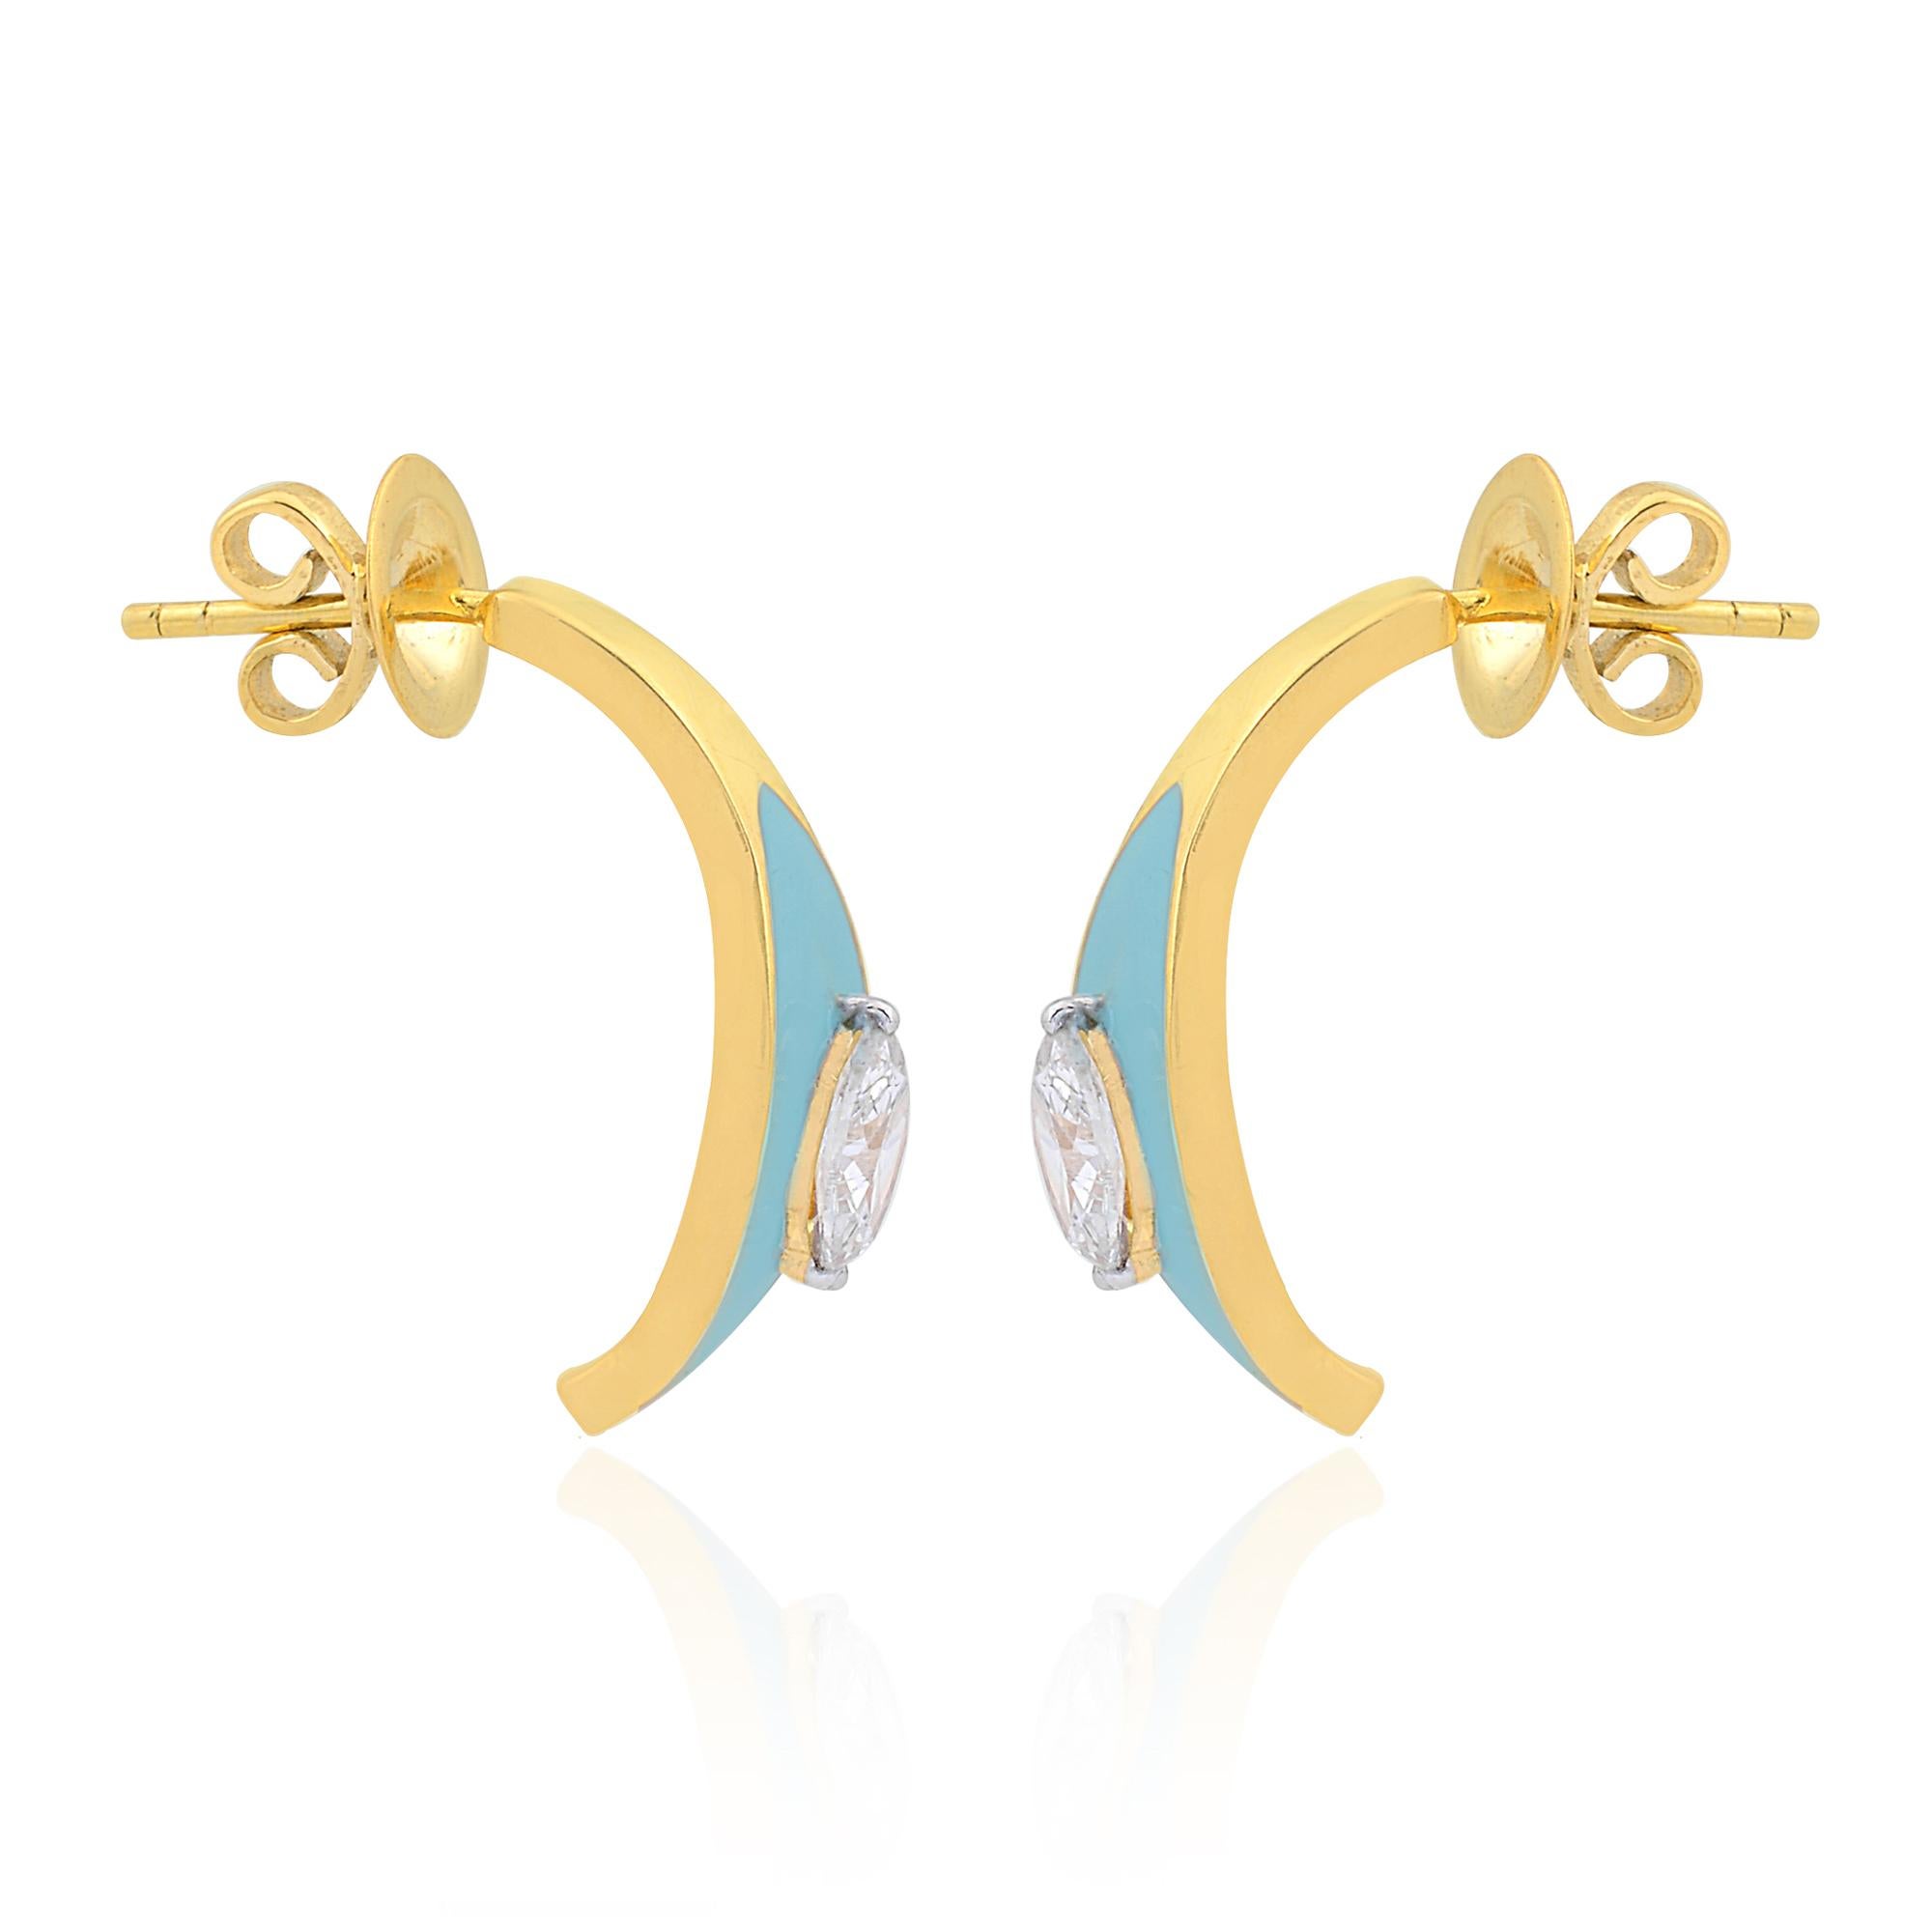 Schmücken Sie sich mit Eleganz und Raffinesse mit diesen atemberaubenden 0,75 Karat Marquise Diamond Turquoise Enamel Half Hoop Earrings in 18k Gelbgold. Diese mit viel Liebe zum Detail gefertigten Ohrringe vereinen klassischen Charme mit modernem